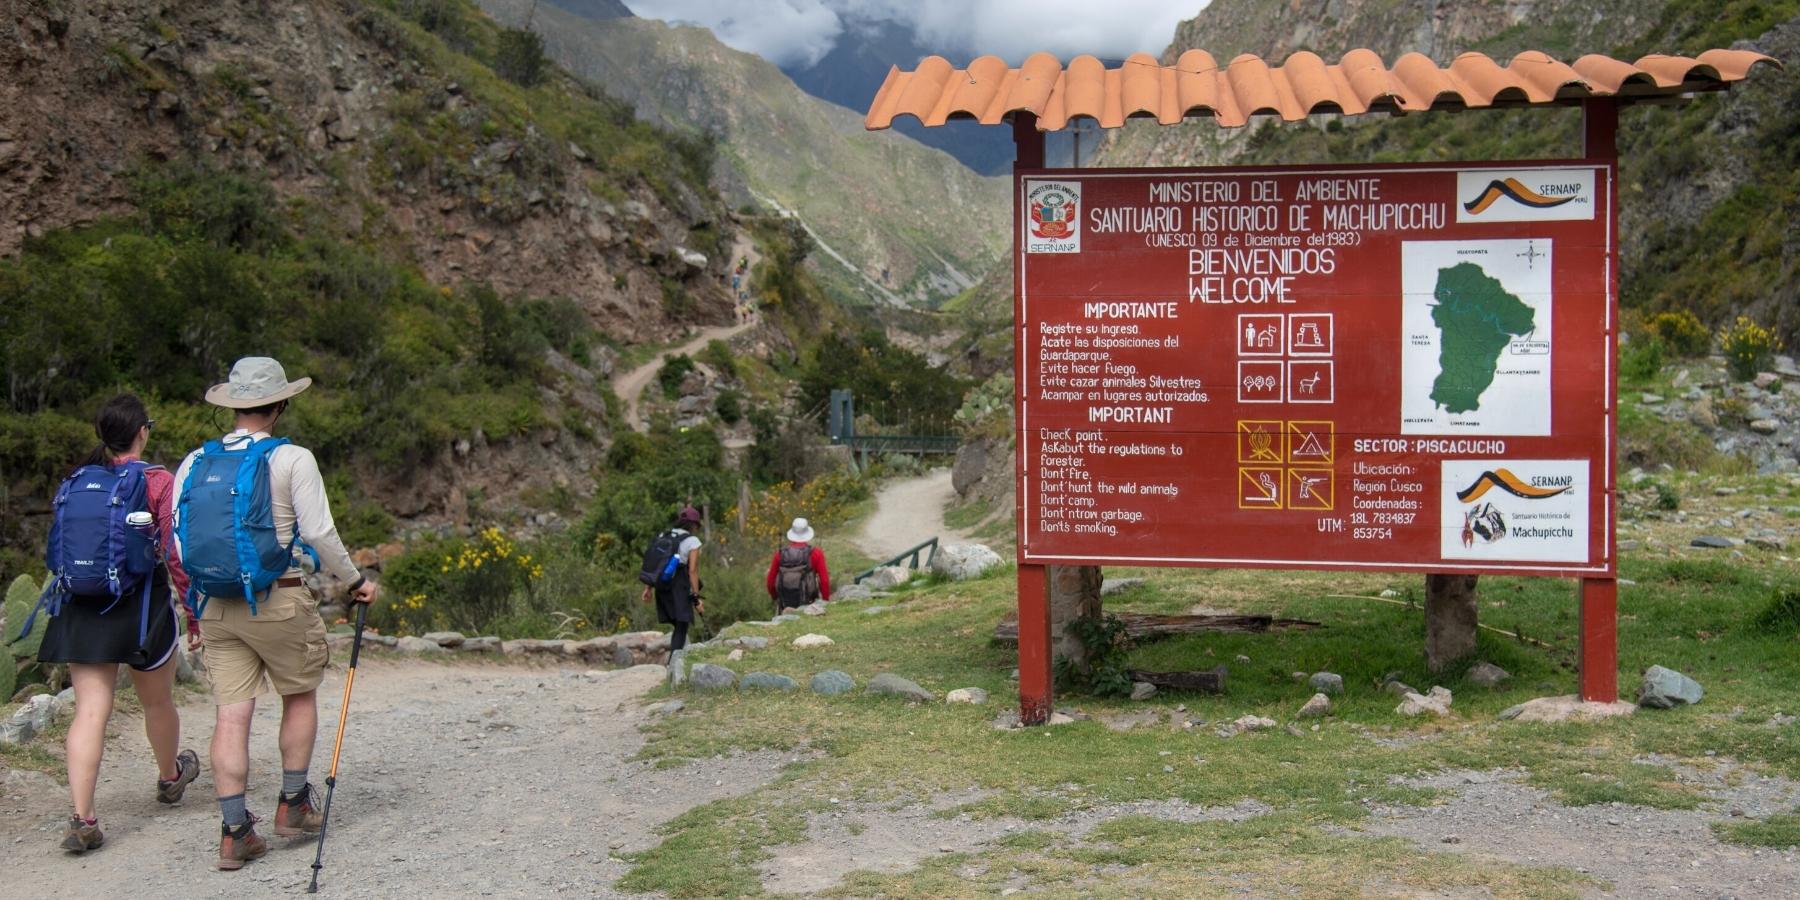 inca trail hike